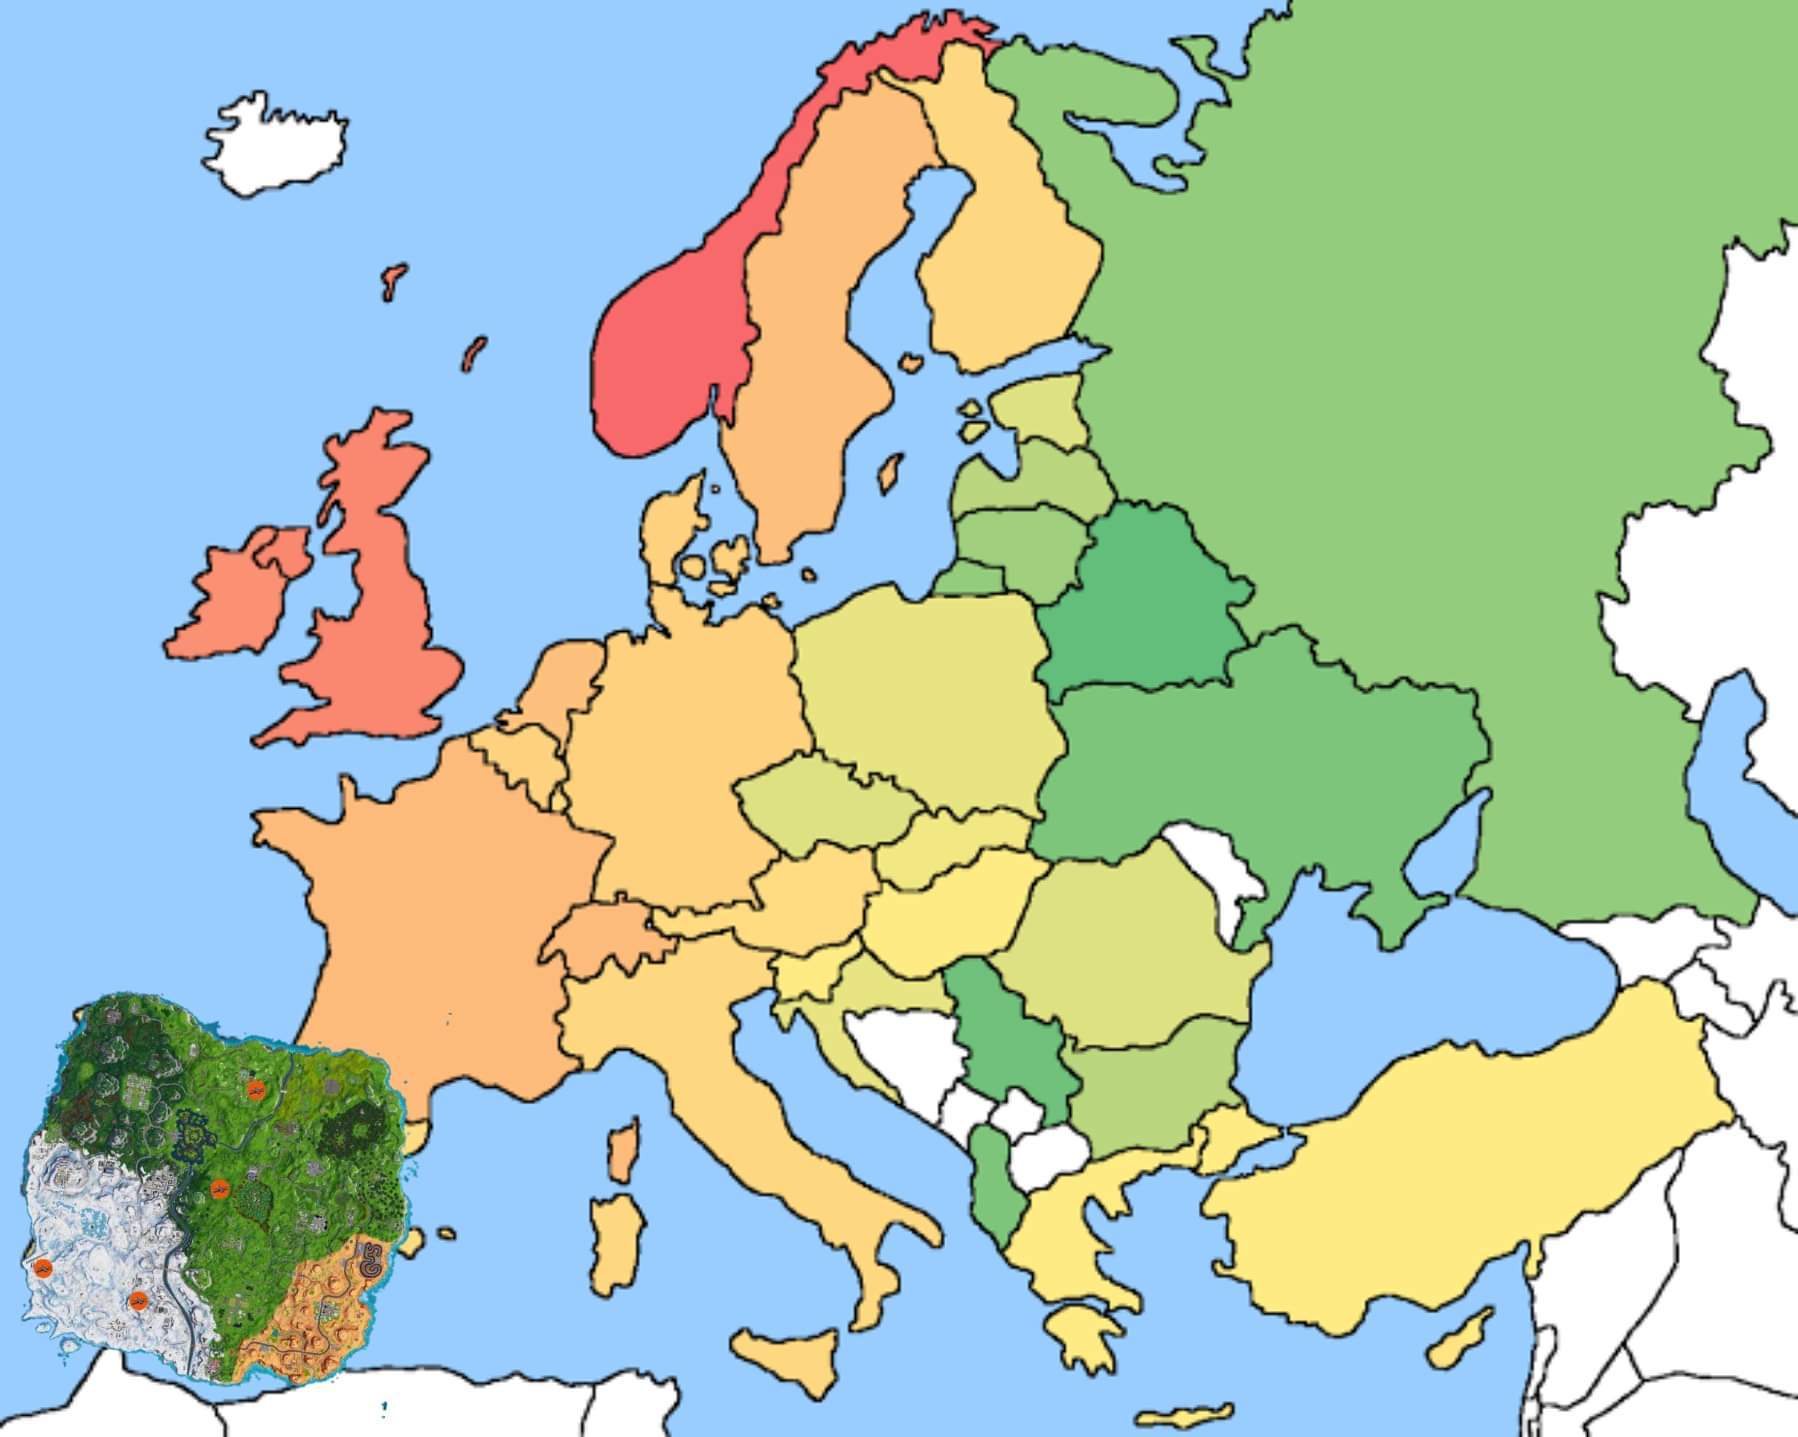 Mapa europeo - meme